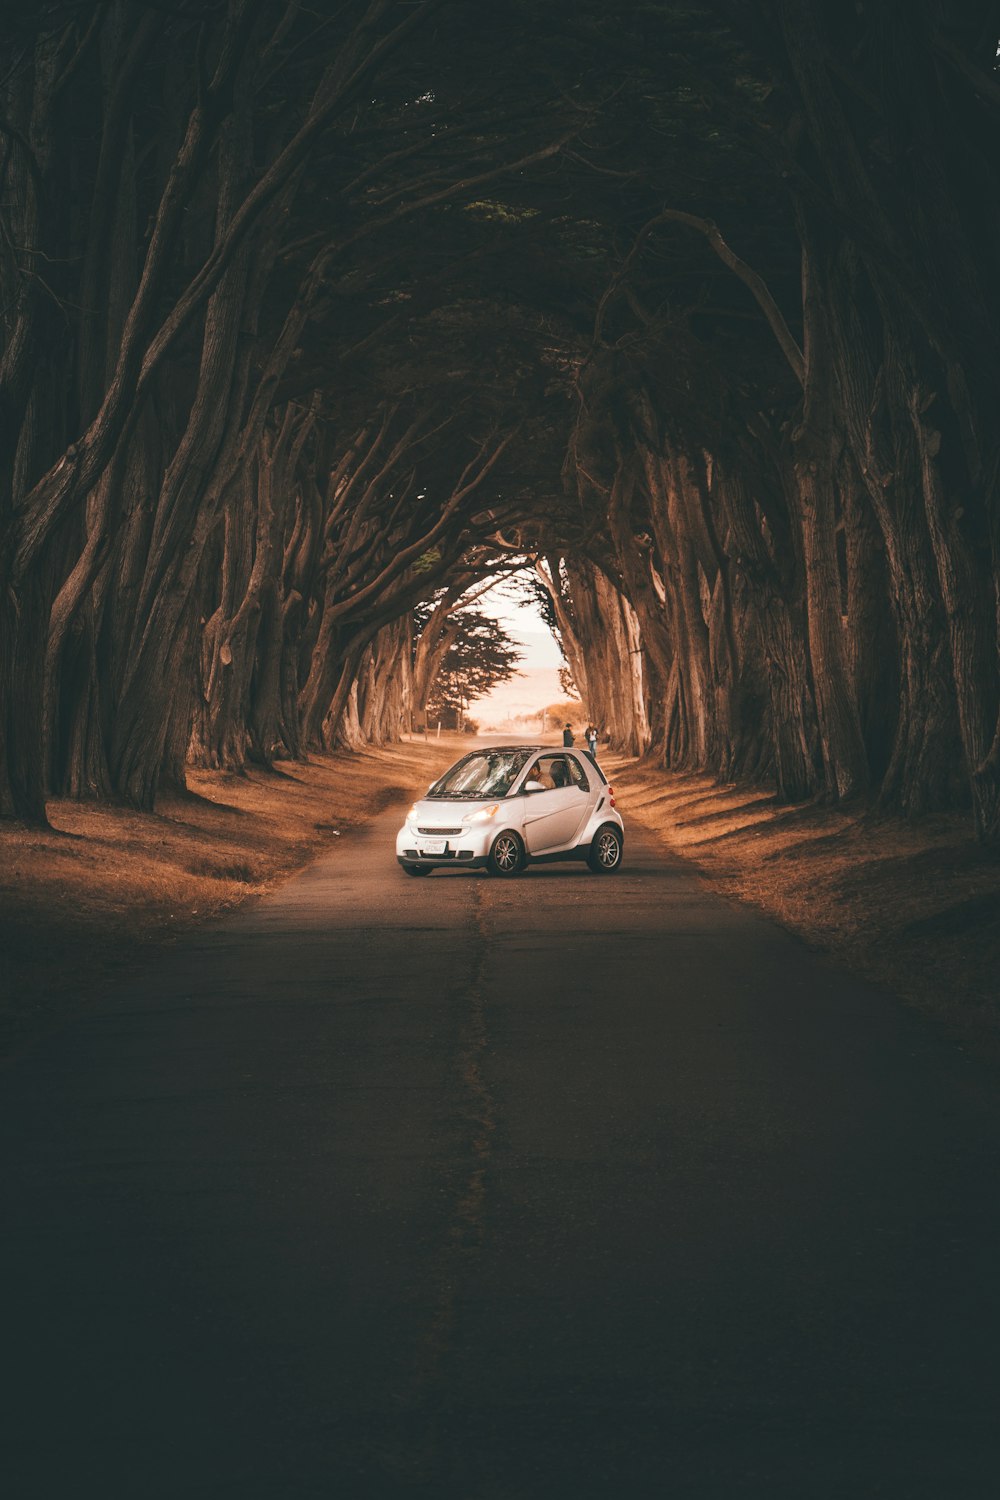 Um carro está estacionado no meio de um túnel de árvores